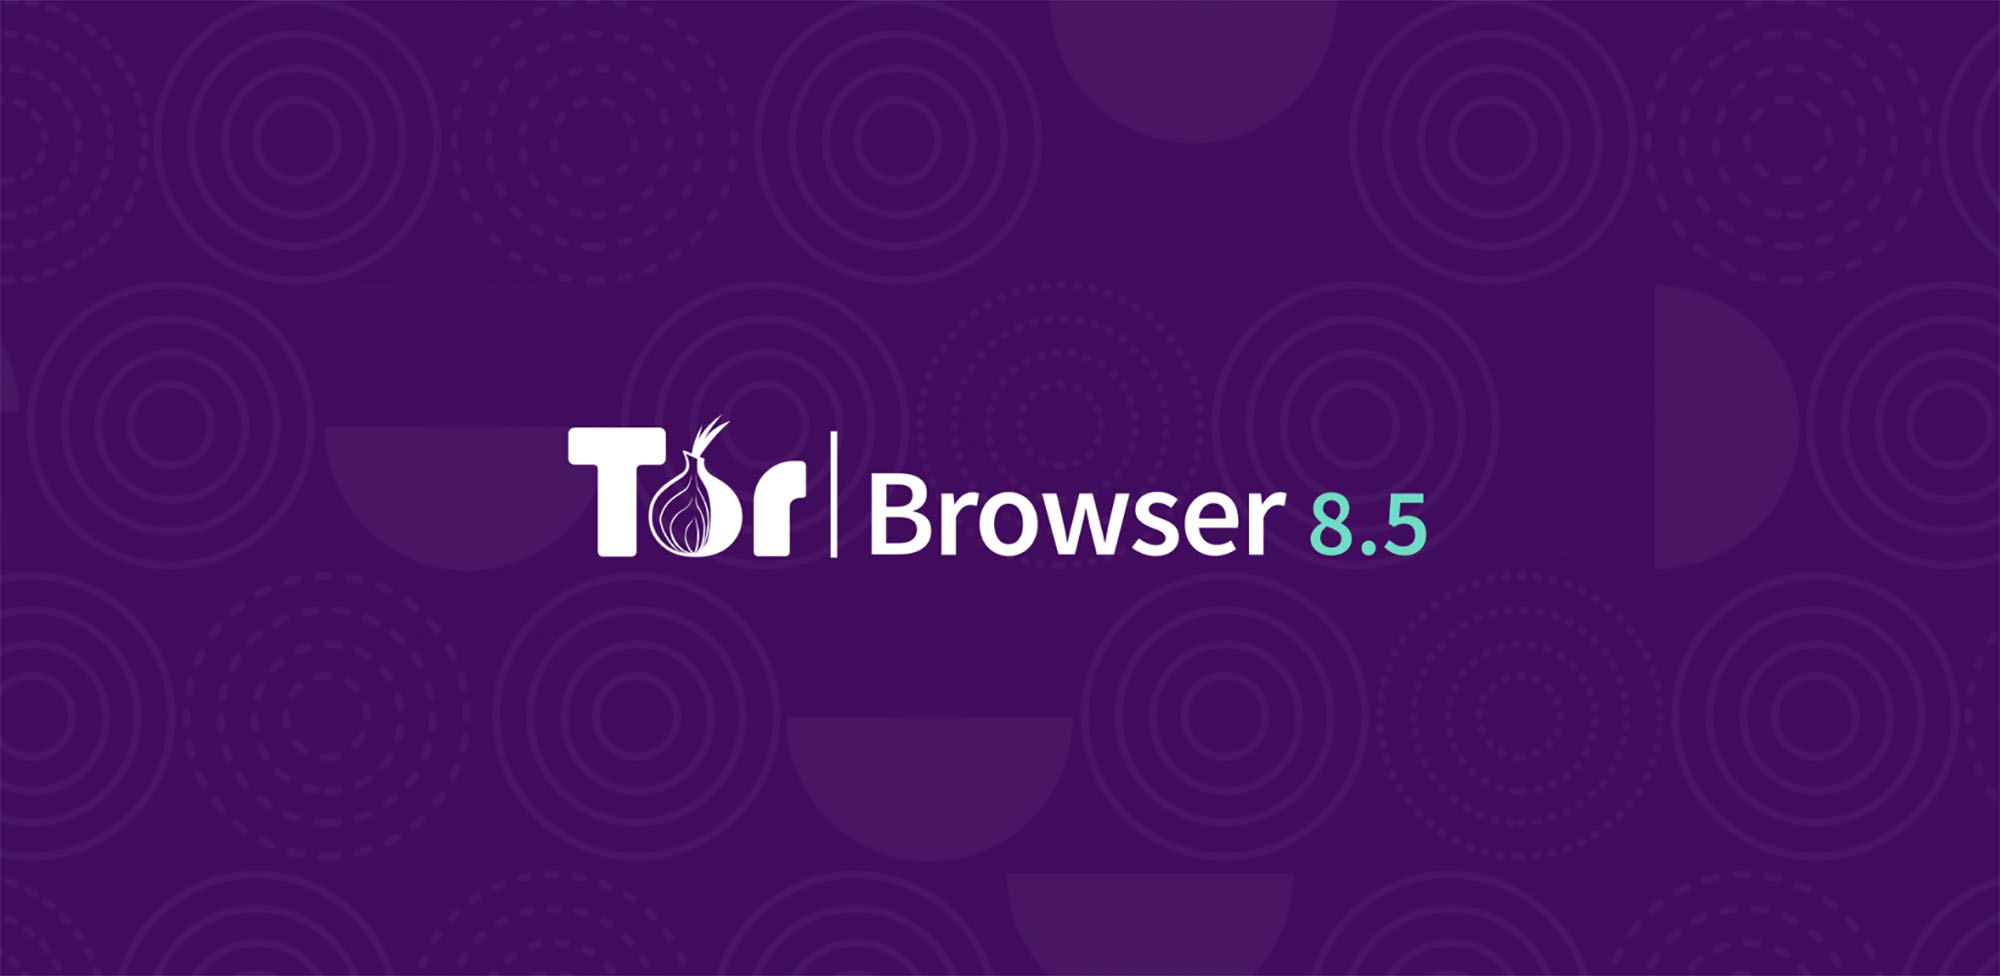 Tor browser 24 mega тор браузер не подключается к сети mega вход